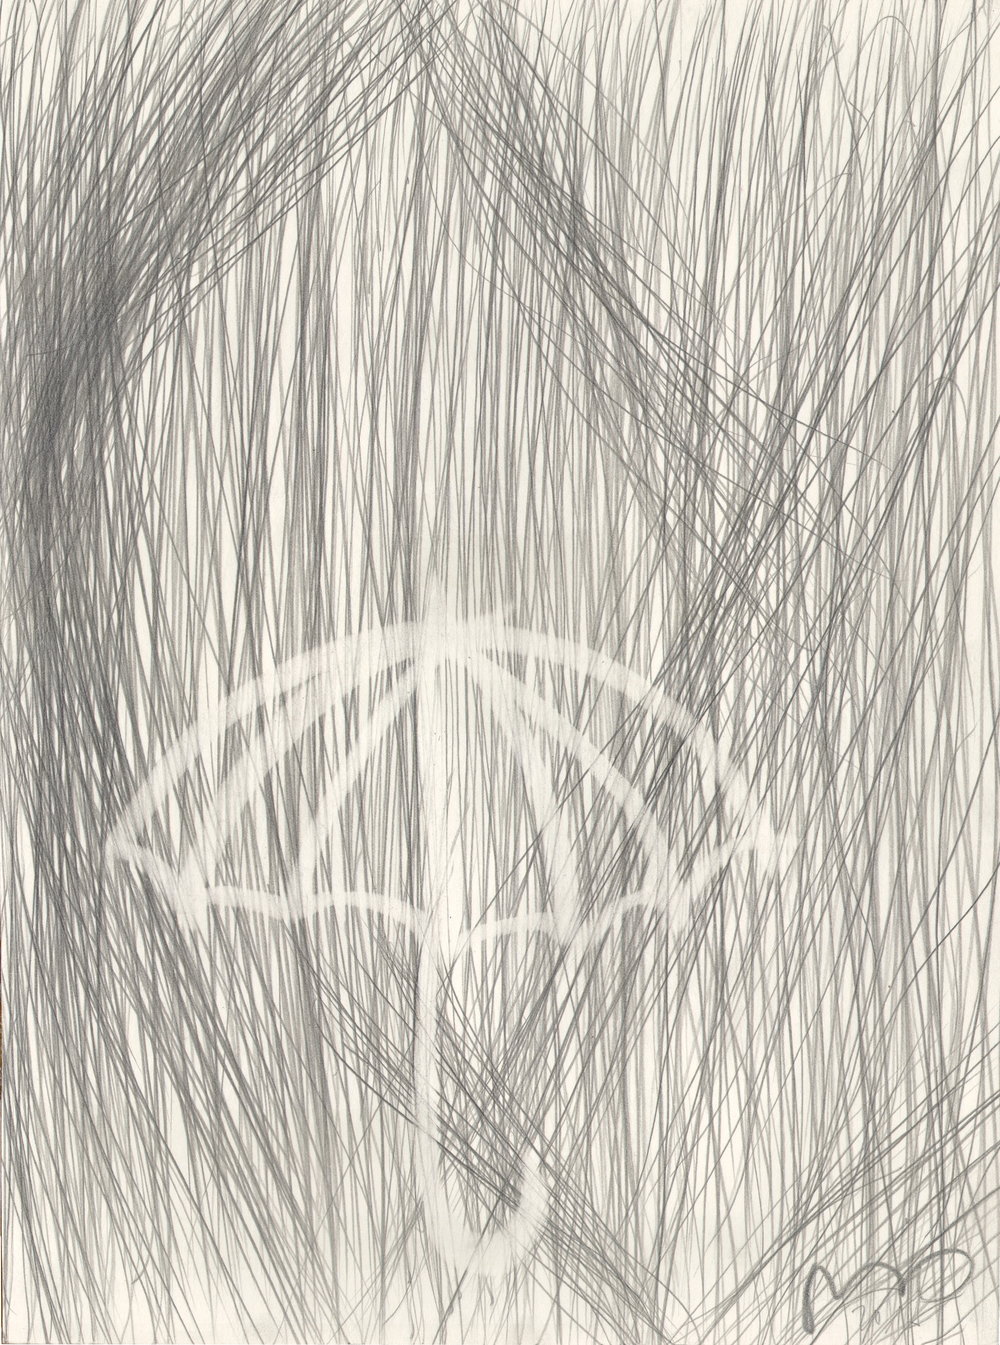  O.T. ( Abstraktion ), 2015  26x35.5cm, Bleistift auf Papier 